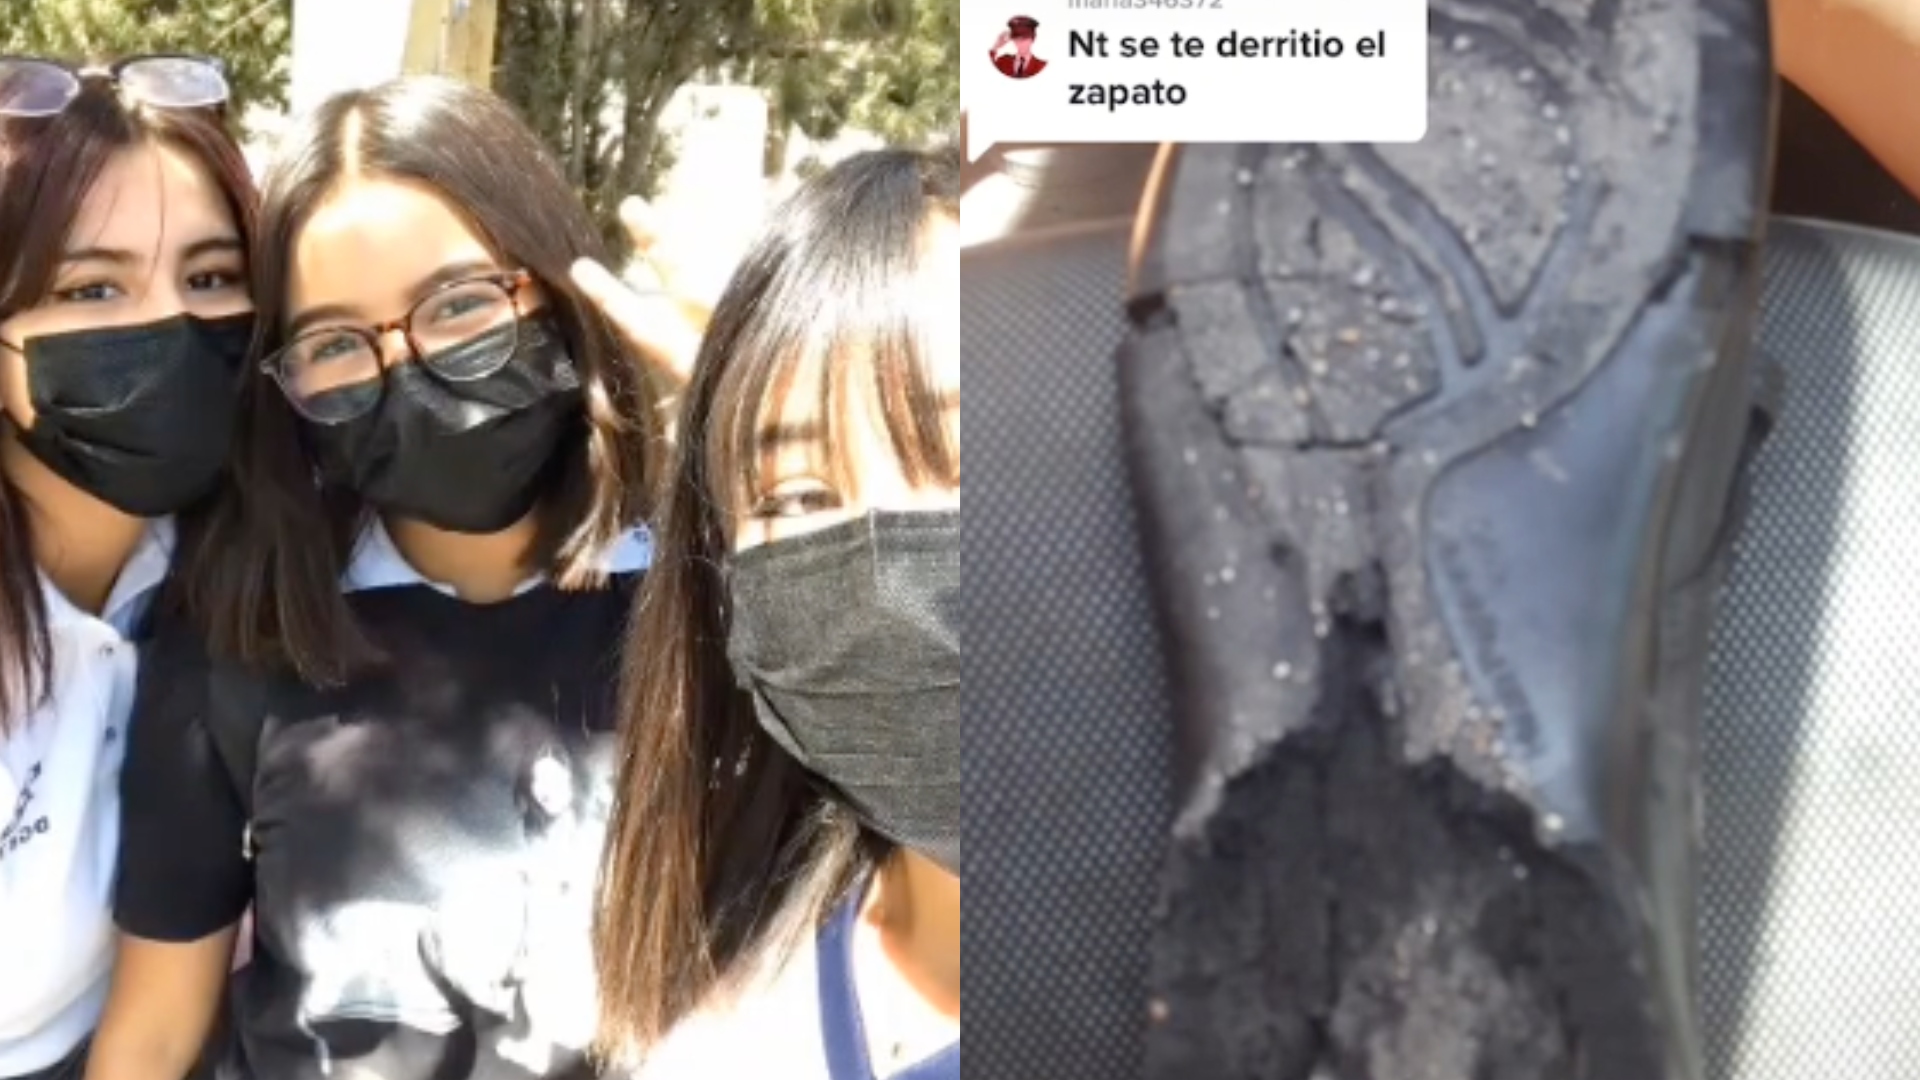 A joven de Ciudad Juárez se le derritió el zapato de la escuela por el calor